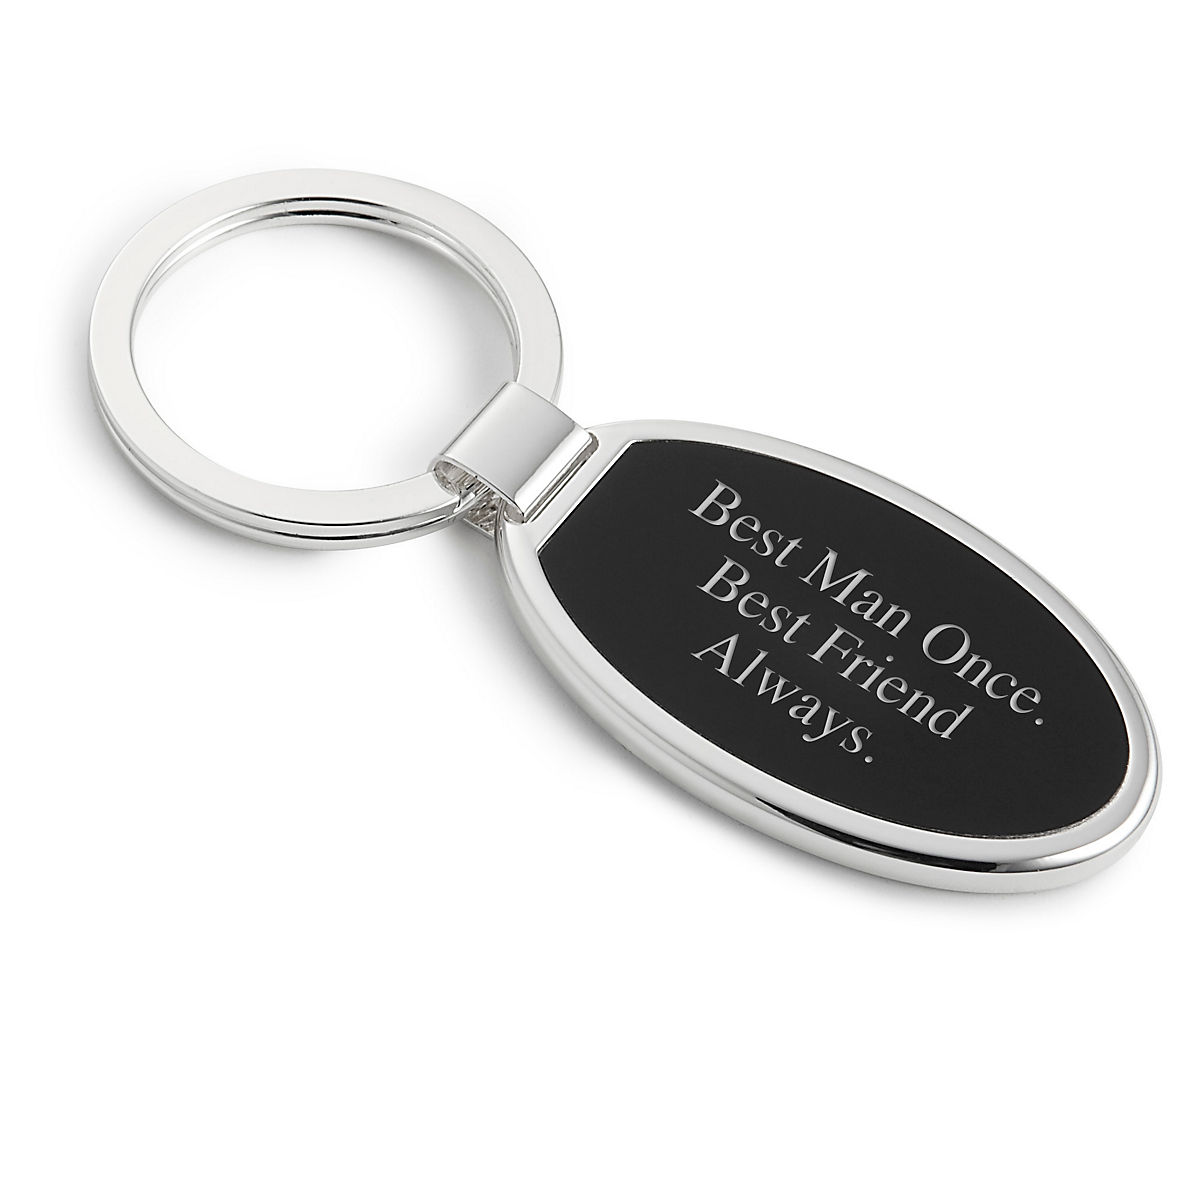 Personalised Keyring Photo Printed/Engraved Keepsakes round keychain X'mas Gift 